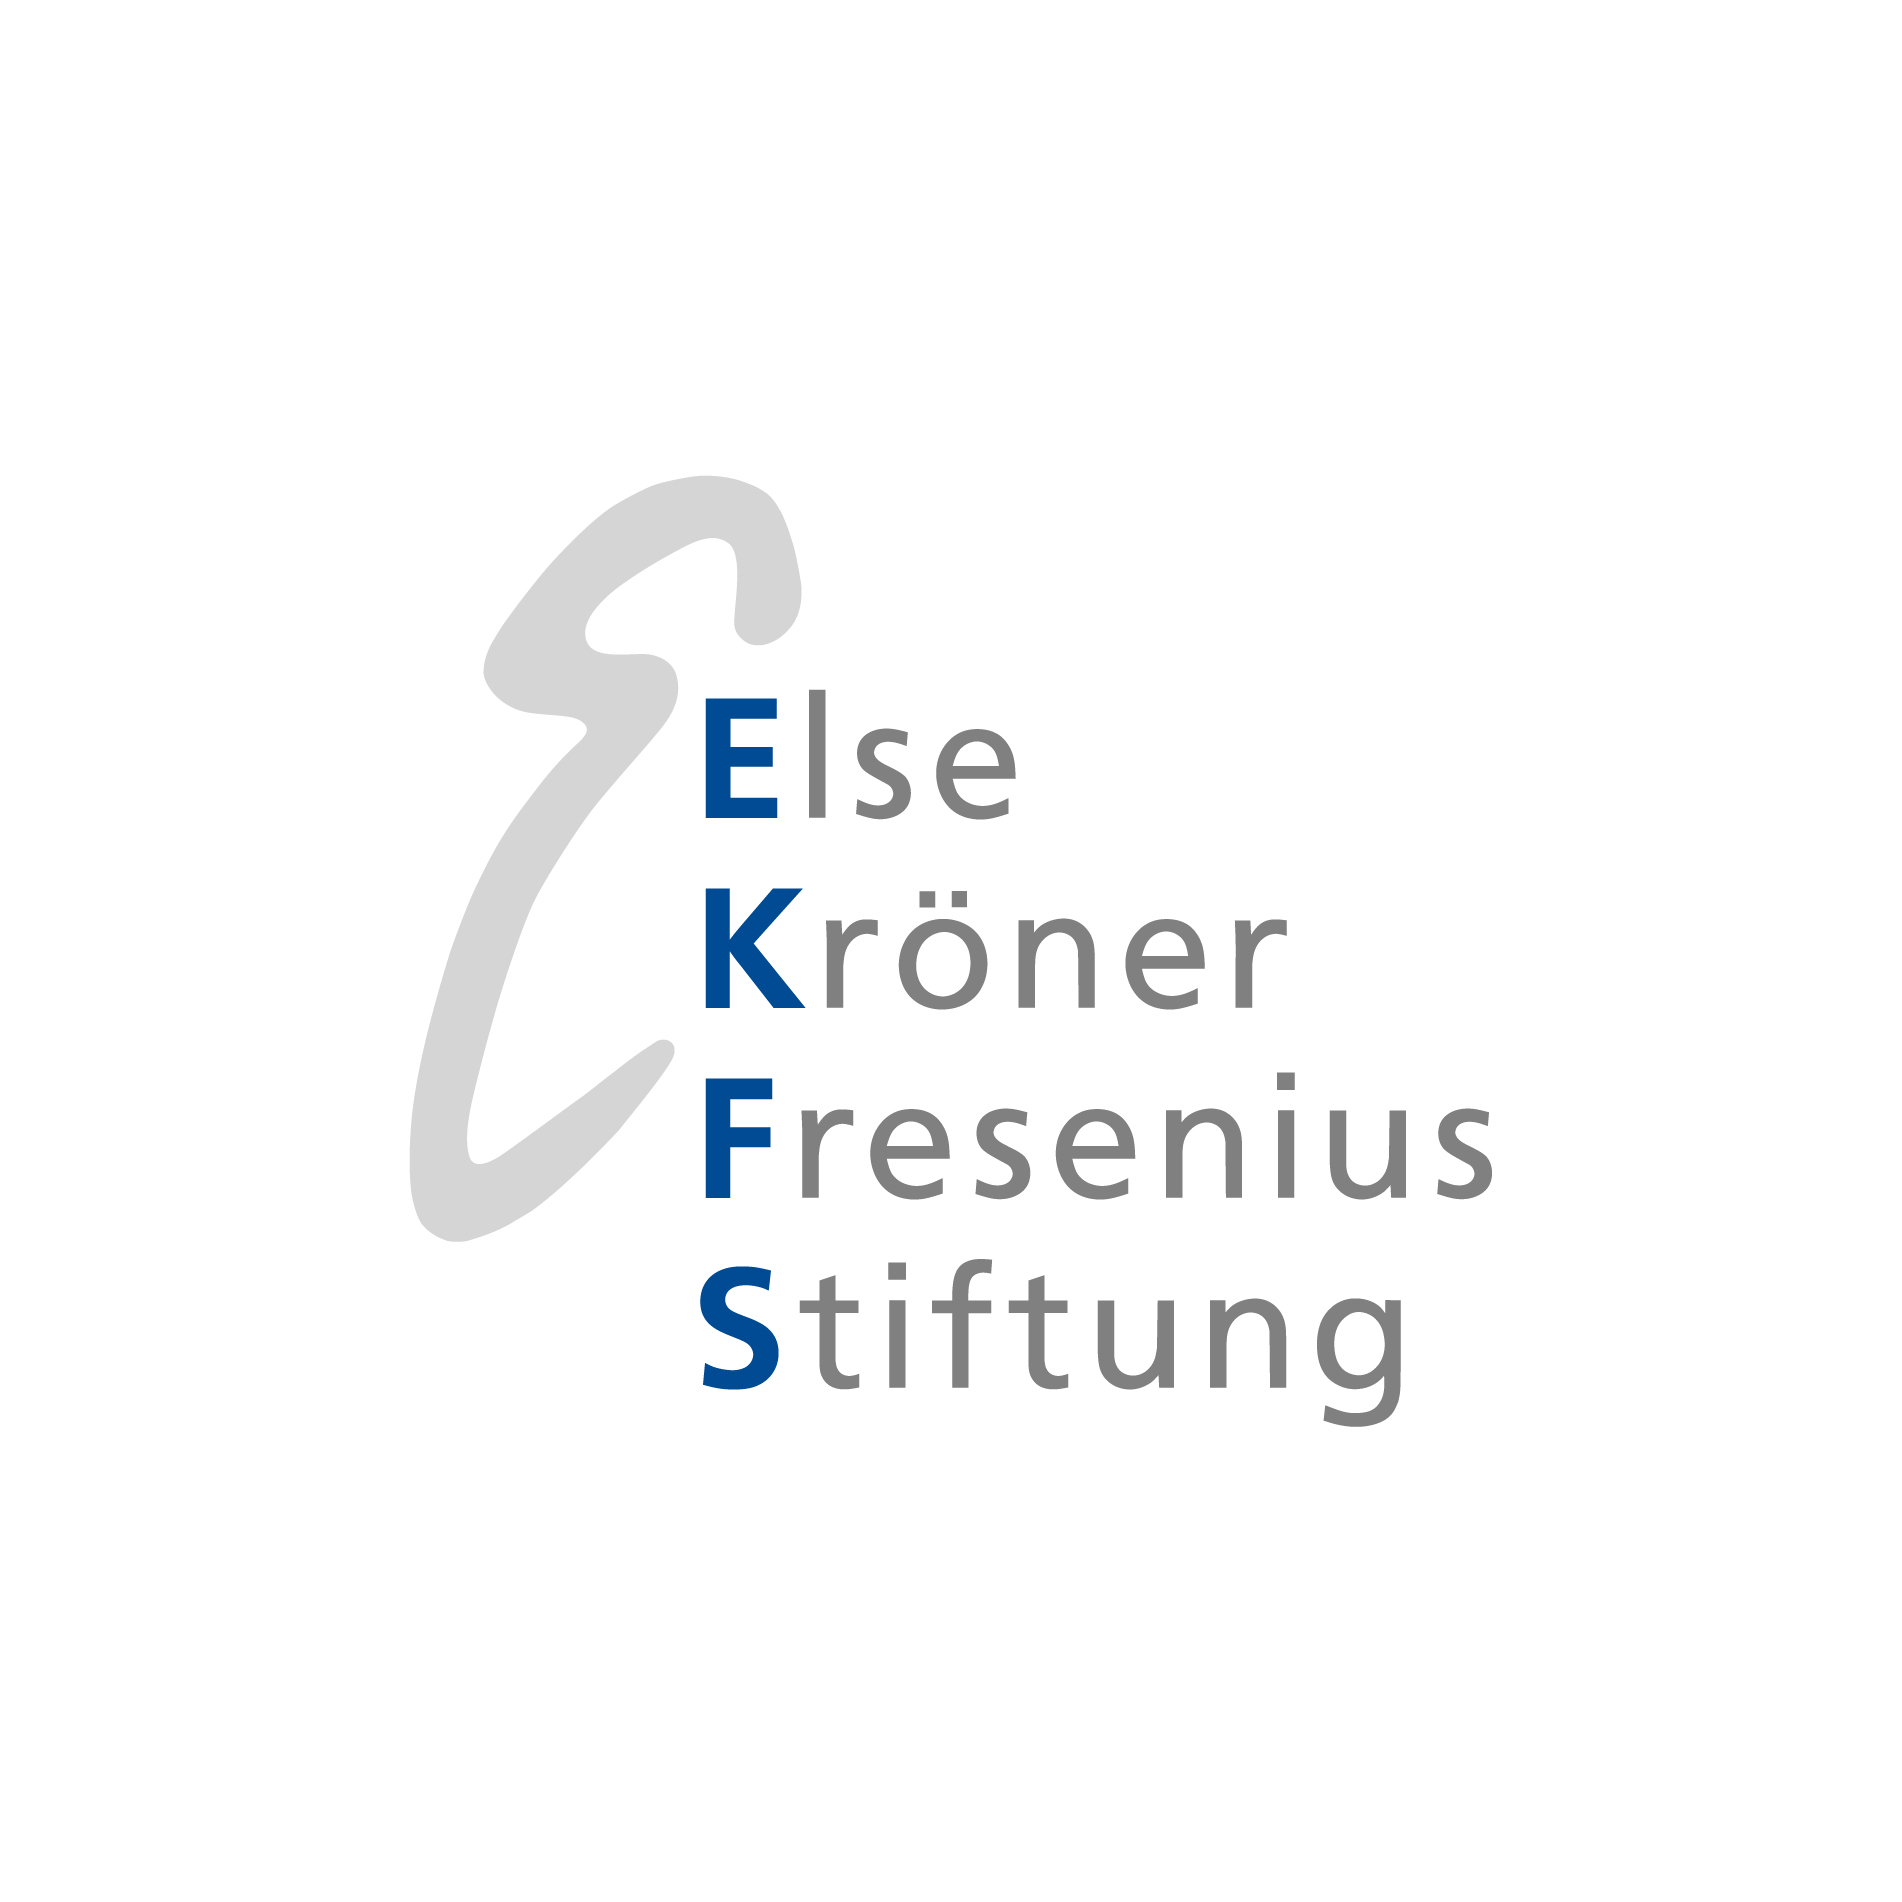 Else-Kröner-Fresenius-Stiftung fördert klinische Covid-19-Studie an der Goethe-Universität mit 700.000 Euro